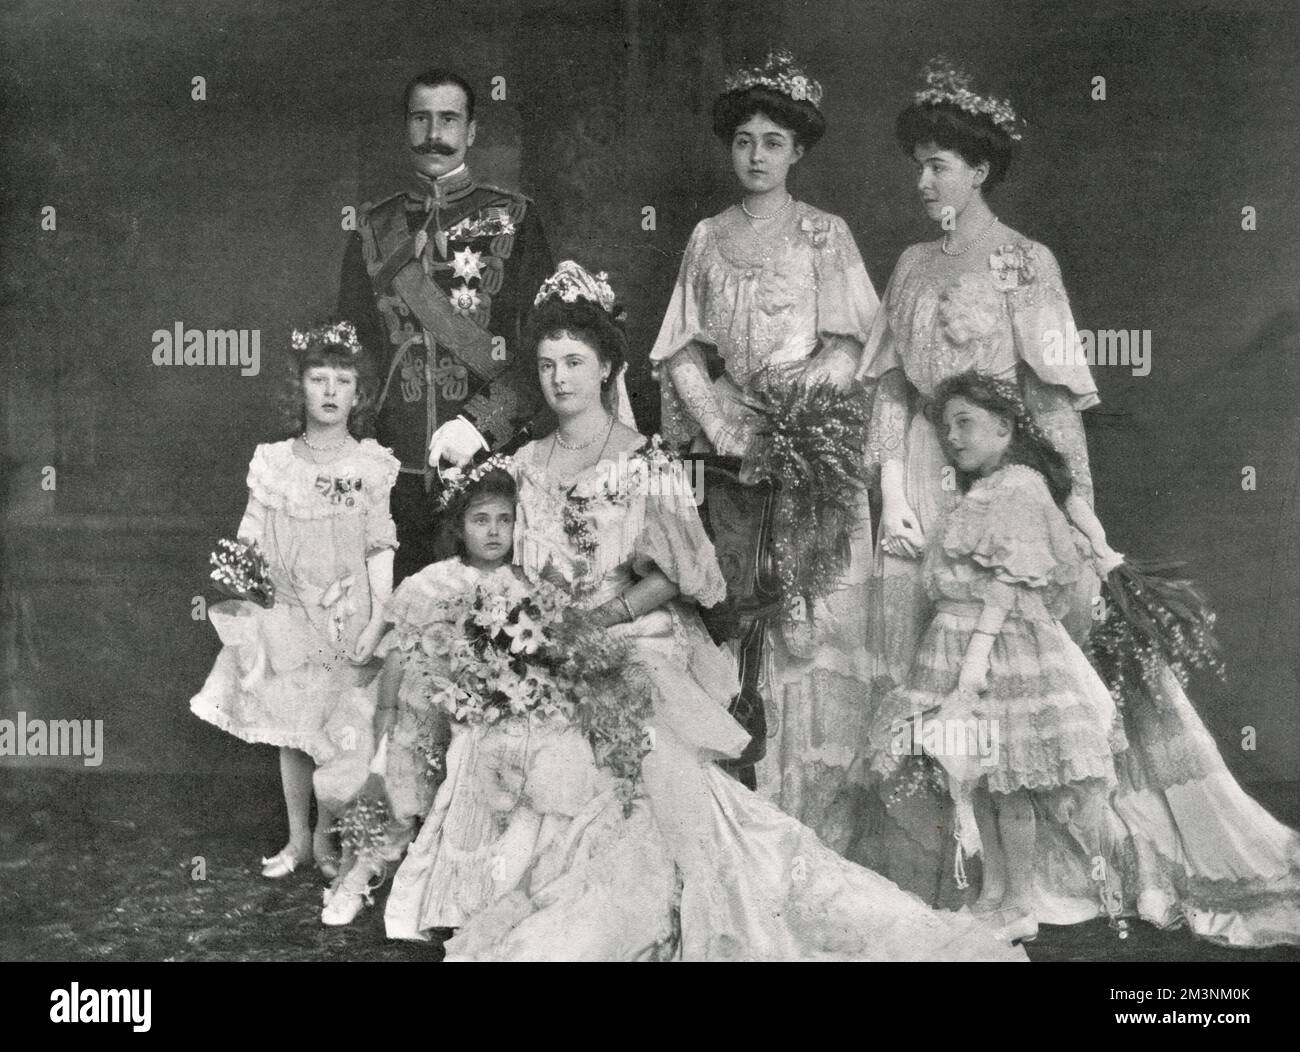 La princesa Alicia de Albany, posterior condesa de Athlone (sentada) (1883-1981) y el príncipe Alejandro de Teck, más tarde Alexander Cambridge, 1st conde de Athlone (1874-1957), fotografiados el día de su boda. Las cinco damas de honor son, de izquierda a derecha, la Princesa María de Gales, la Princesa María de Teck, las Princesas de Connaught (Margarita y Patricia), y la Princesa Helen de Waldeck-Pyrmont. La boda tuvo lugar el 10 de febrero de 1904 en la Capilla de San Jorge, Windsor. Fecha: 10 de febrero de 1904 Foto de stock